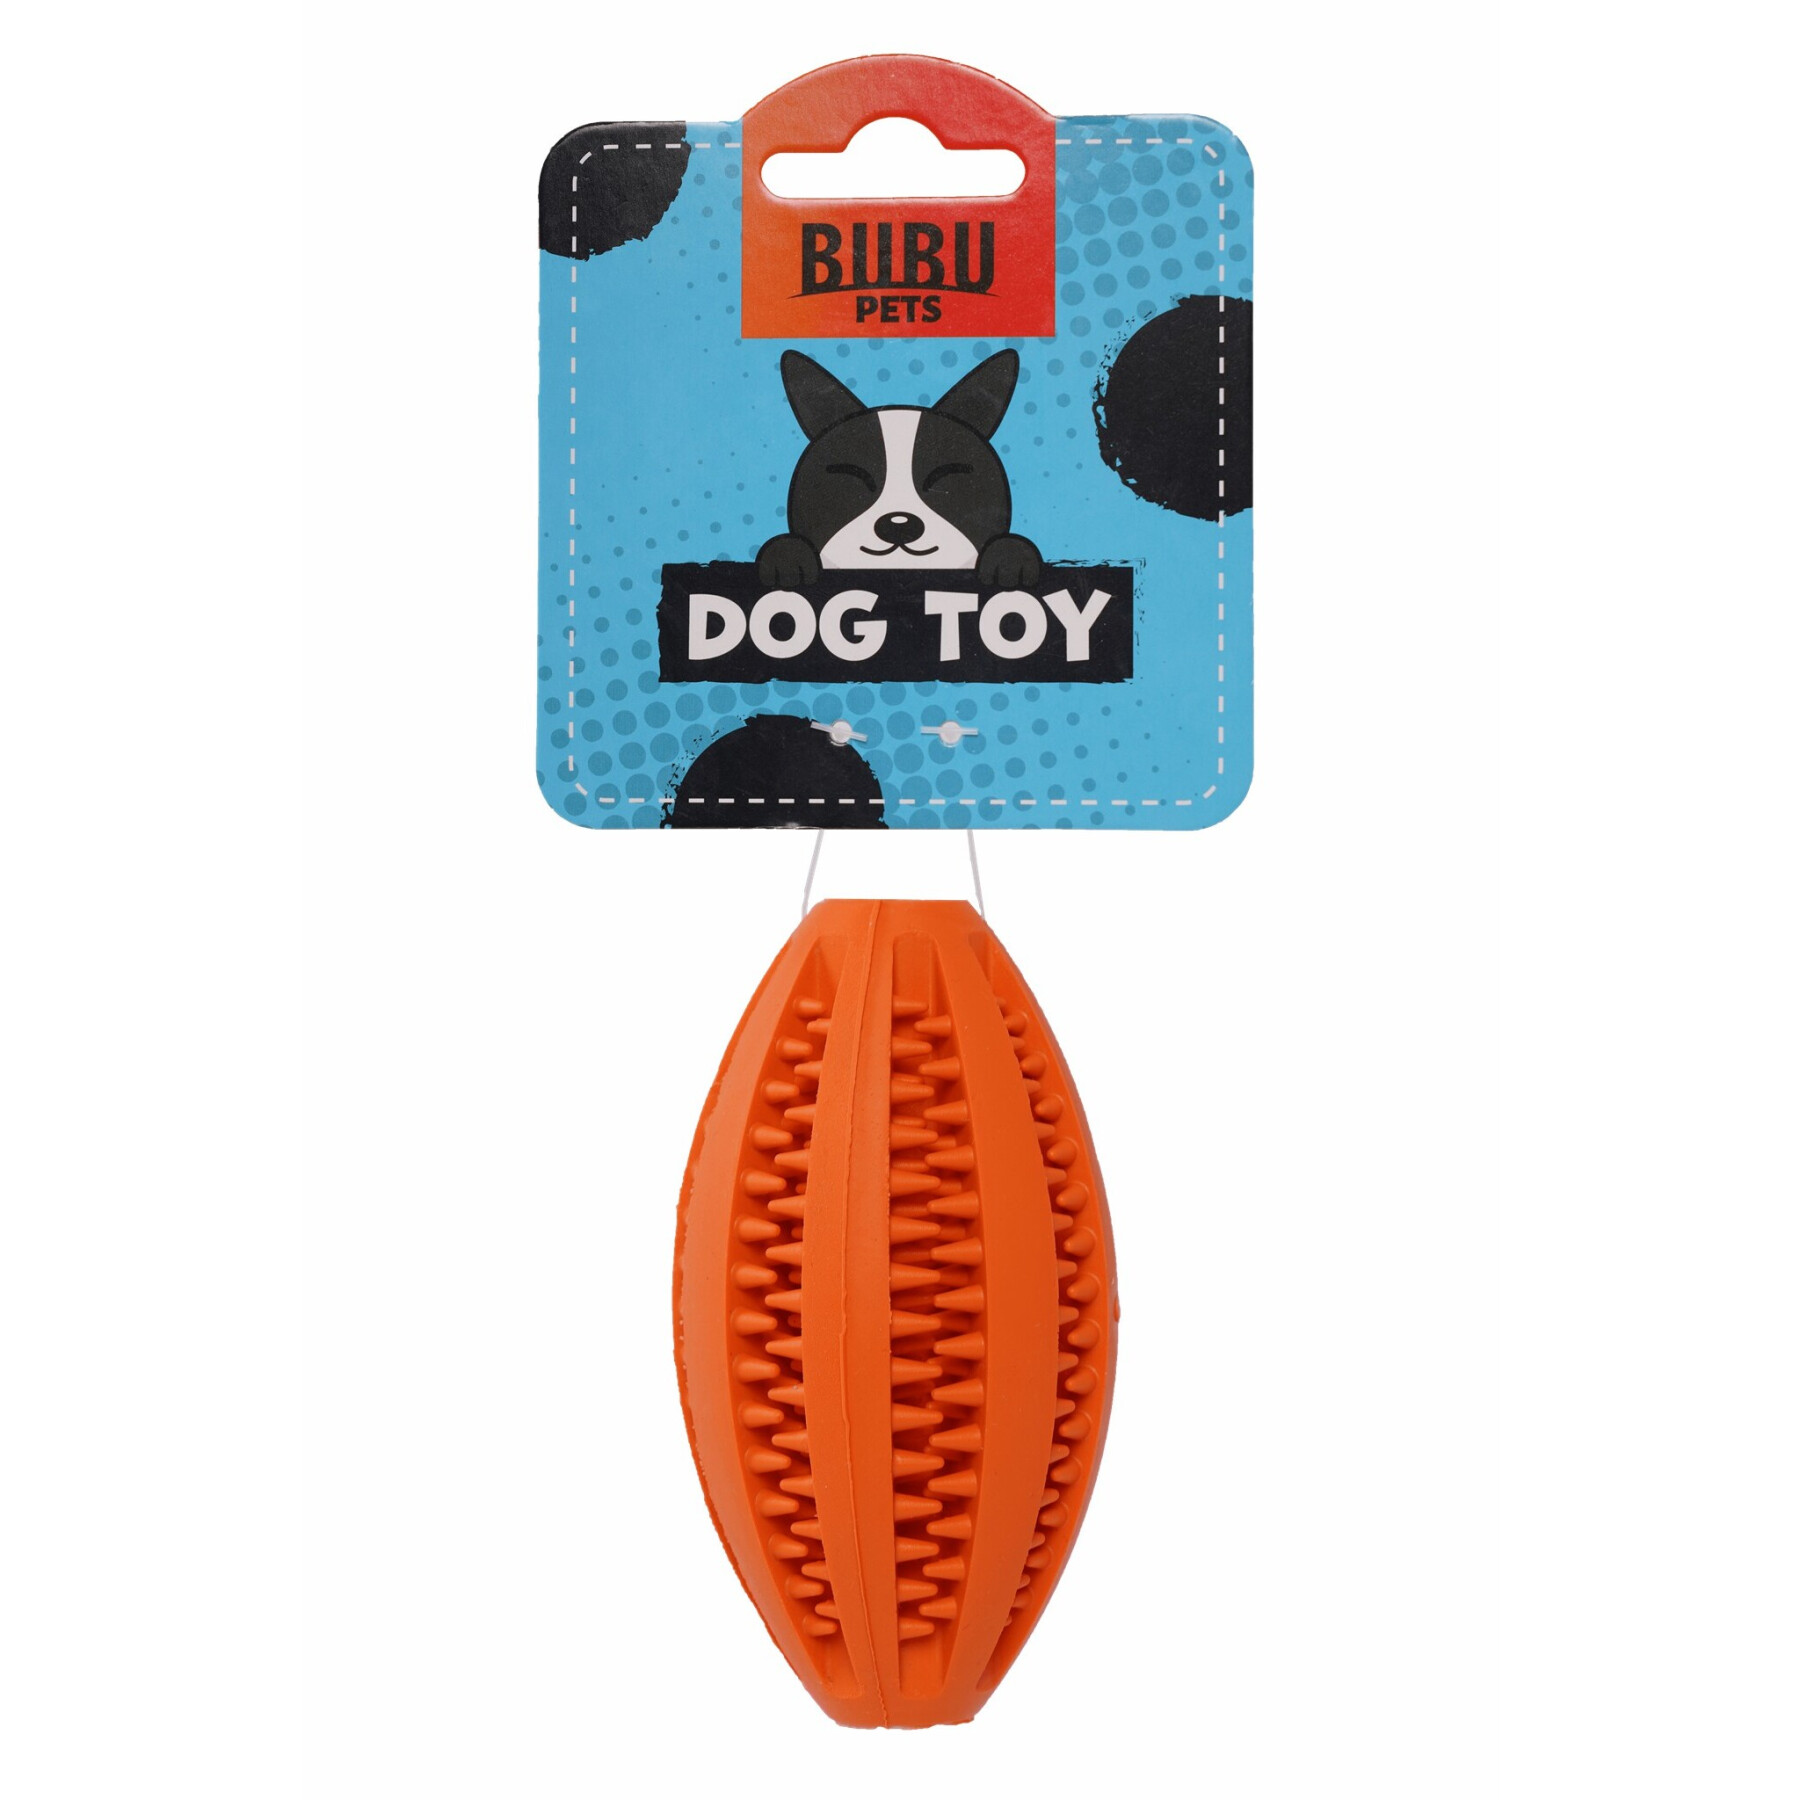 Bola de rugby dentária para cães com guloseimas com sabor a menta BUBU Pets